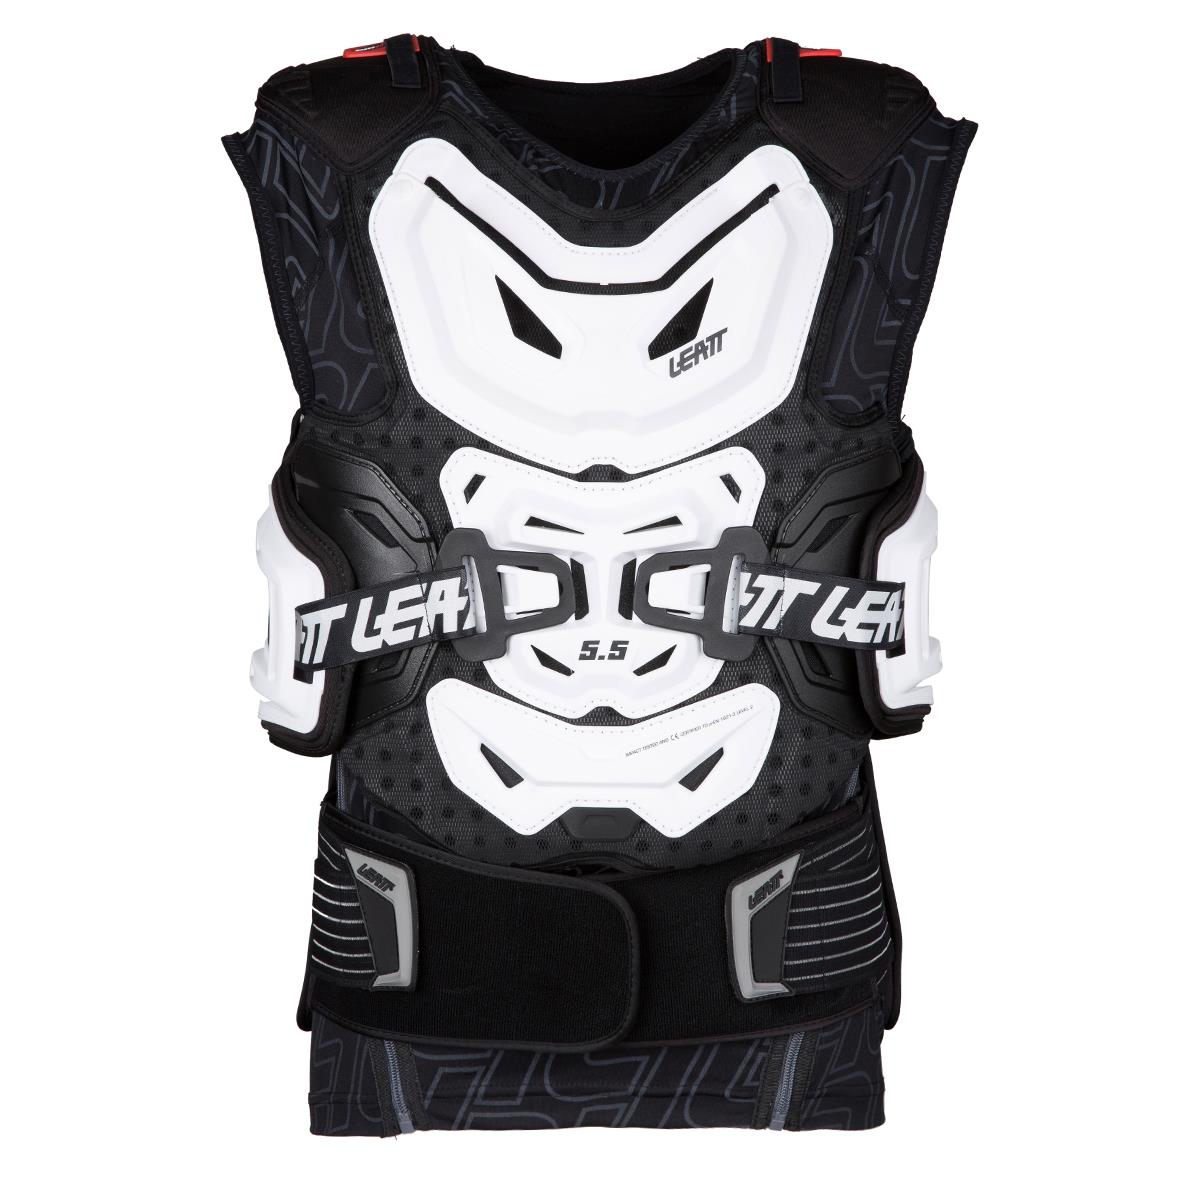 Leatt Protector Vest Body Vest 5.5 White